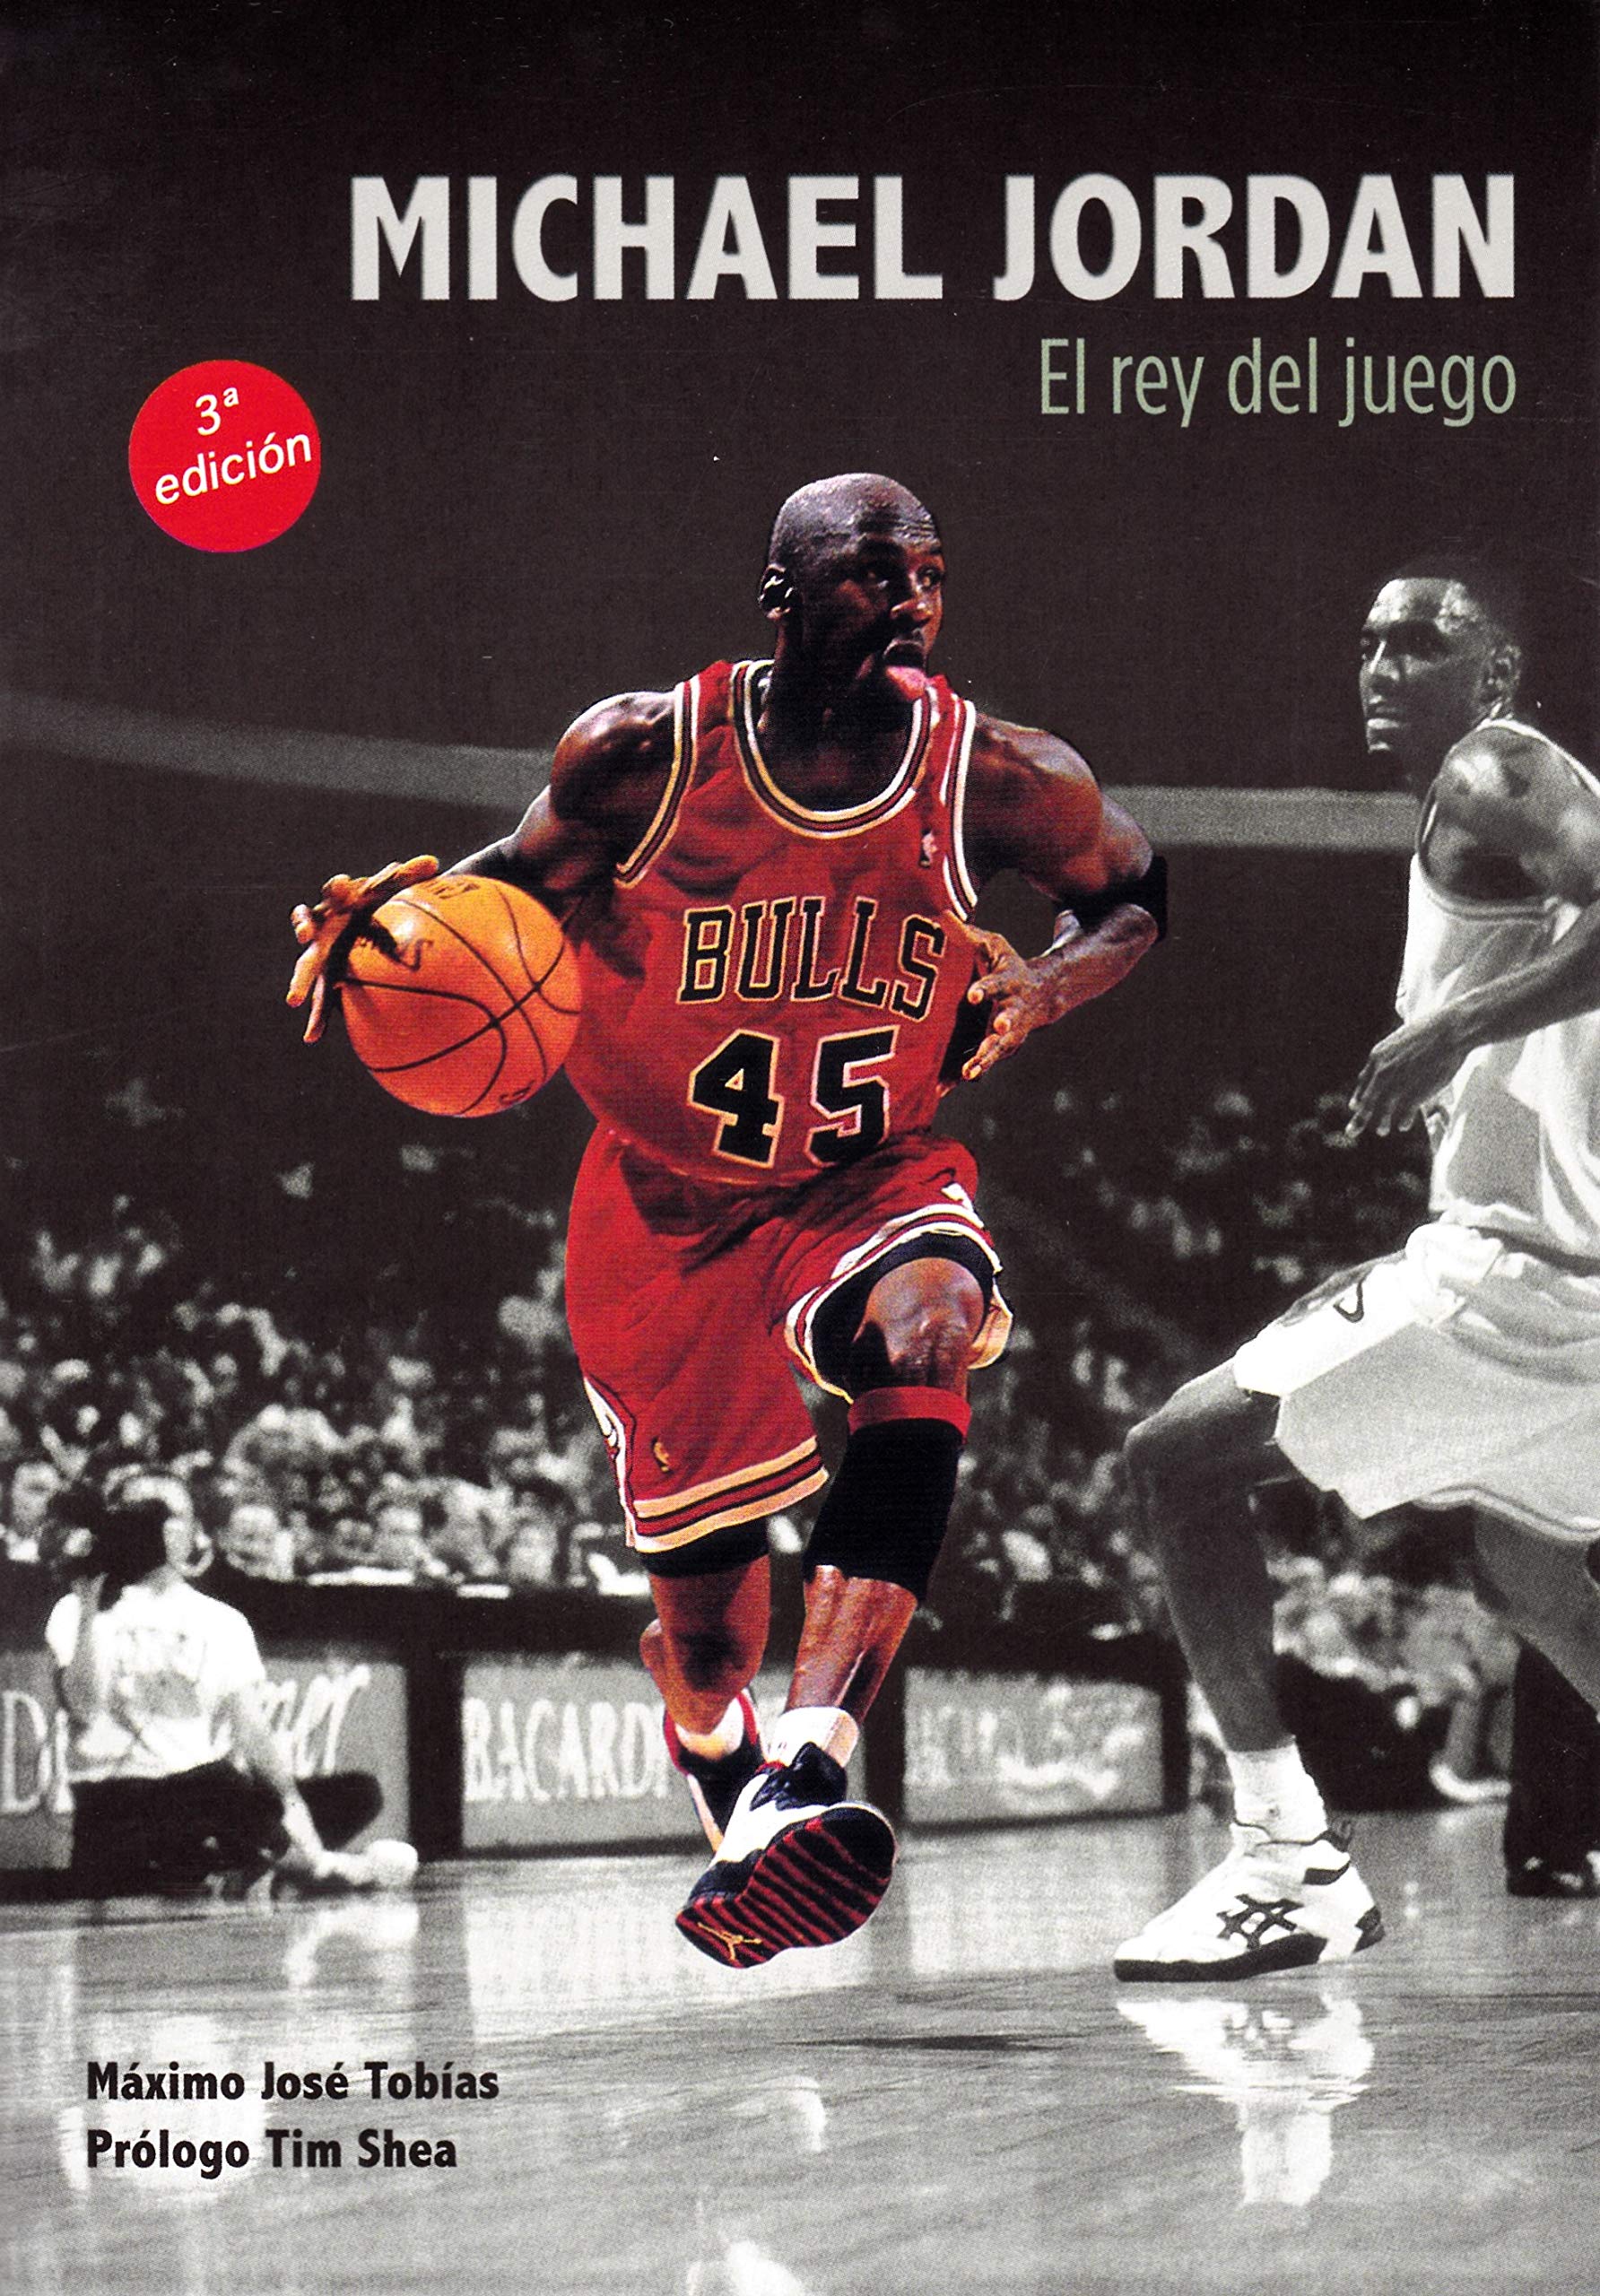 Biografía de Michael Jordan